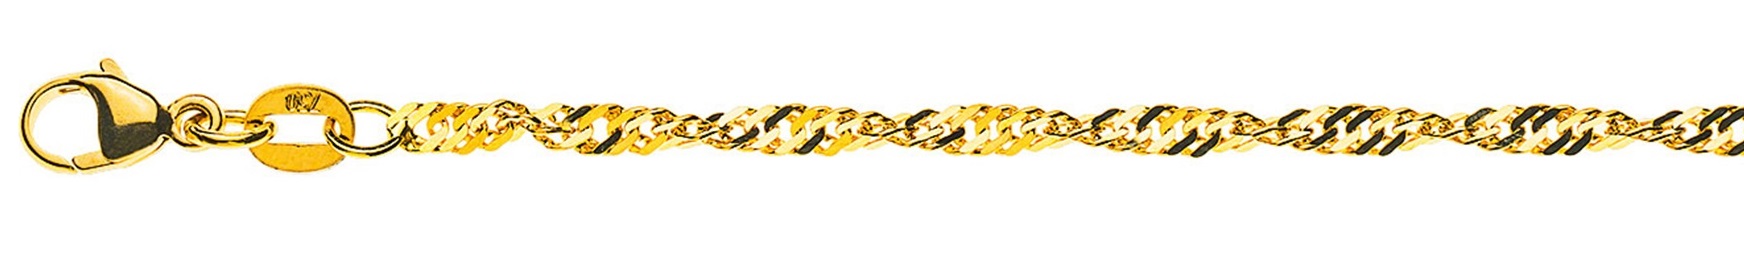 AURONOS Prestige Halskette Gelbgold 18K Singapurkette 60cm 2.4mm